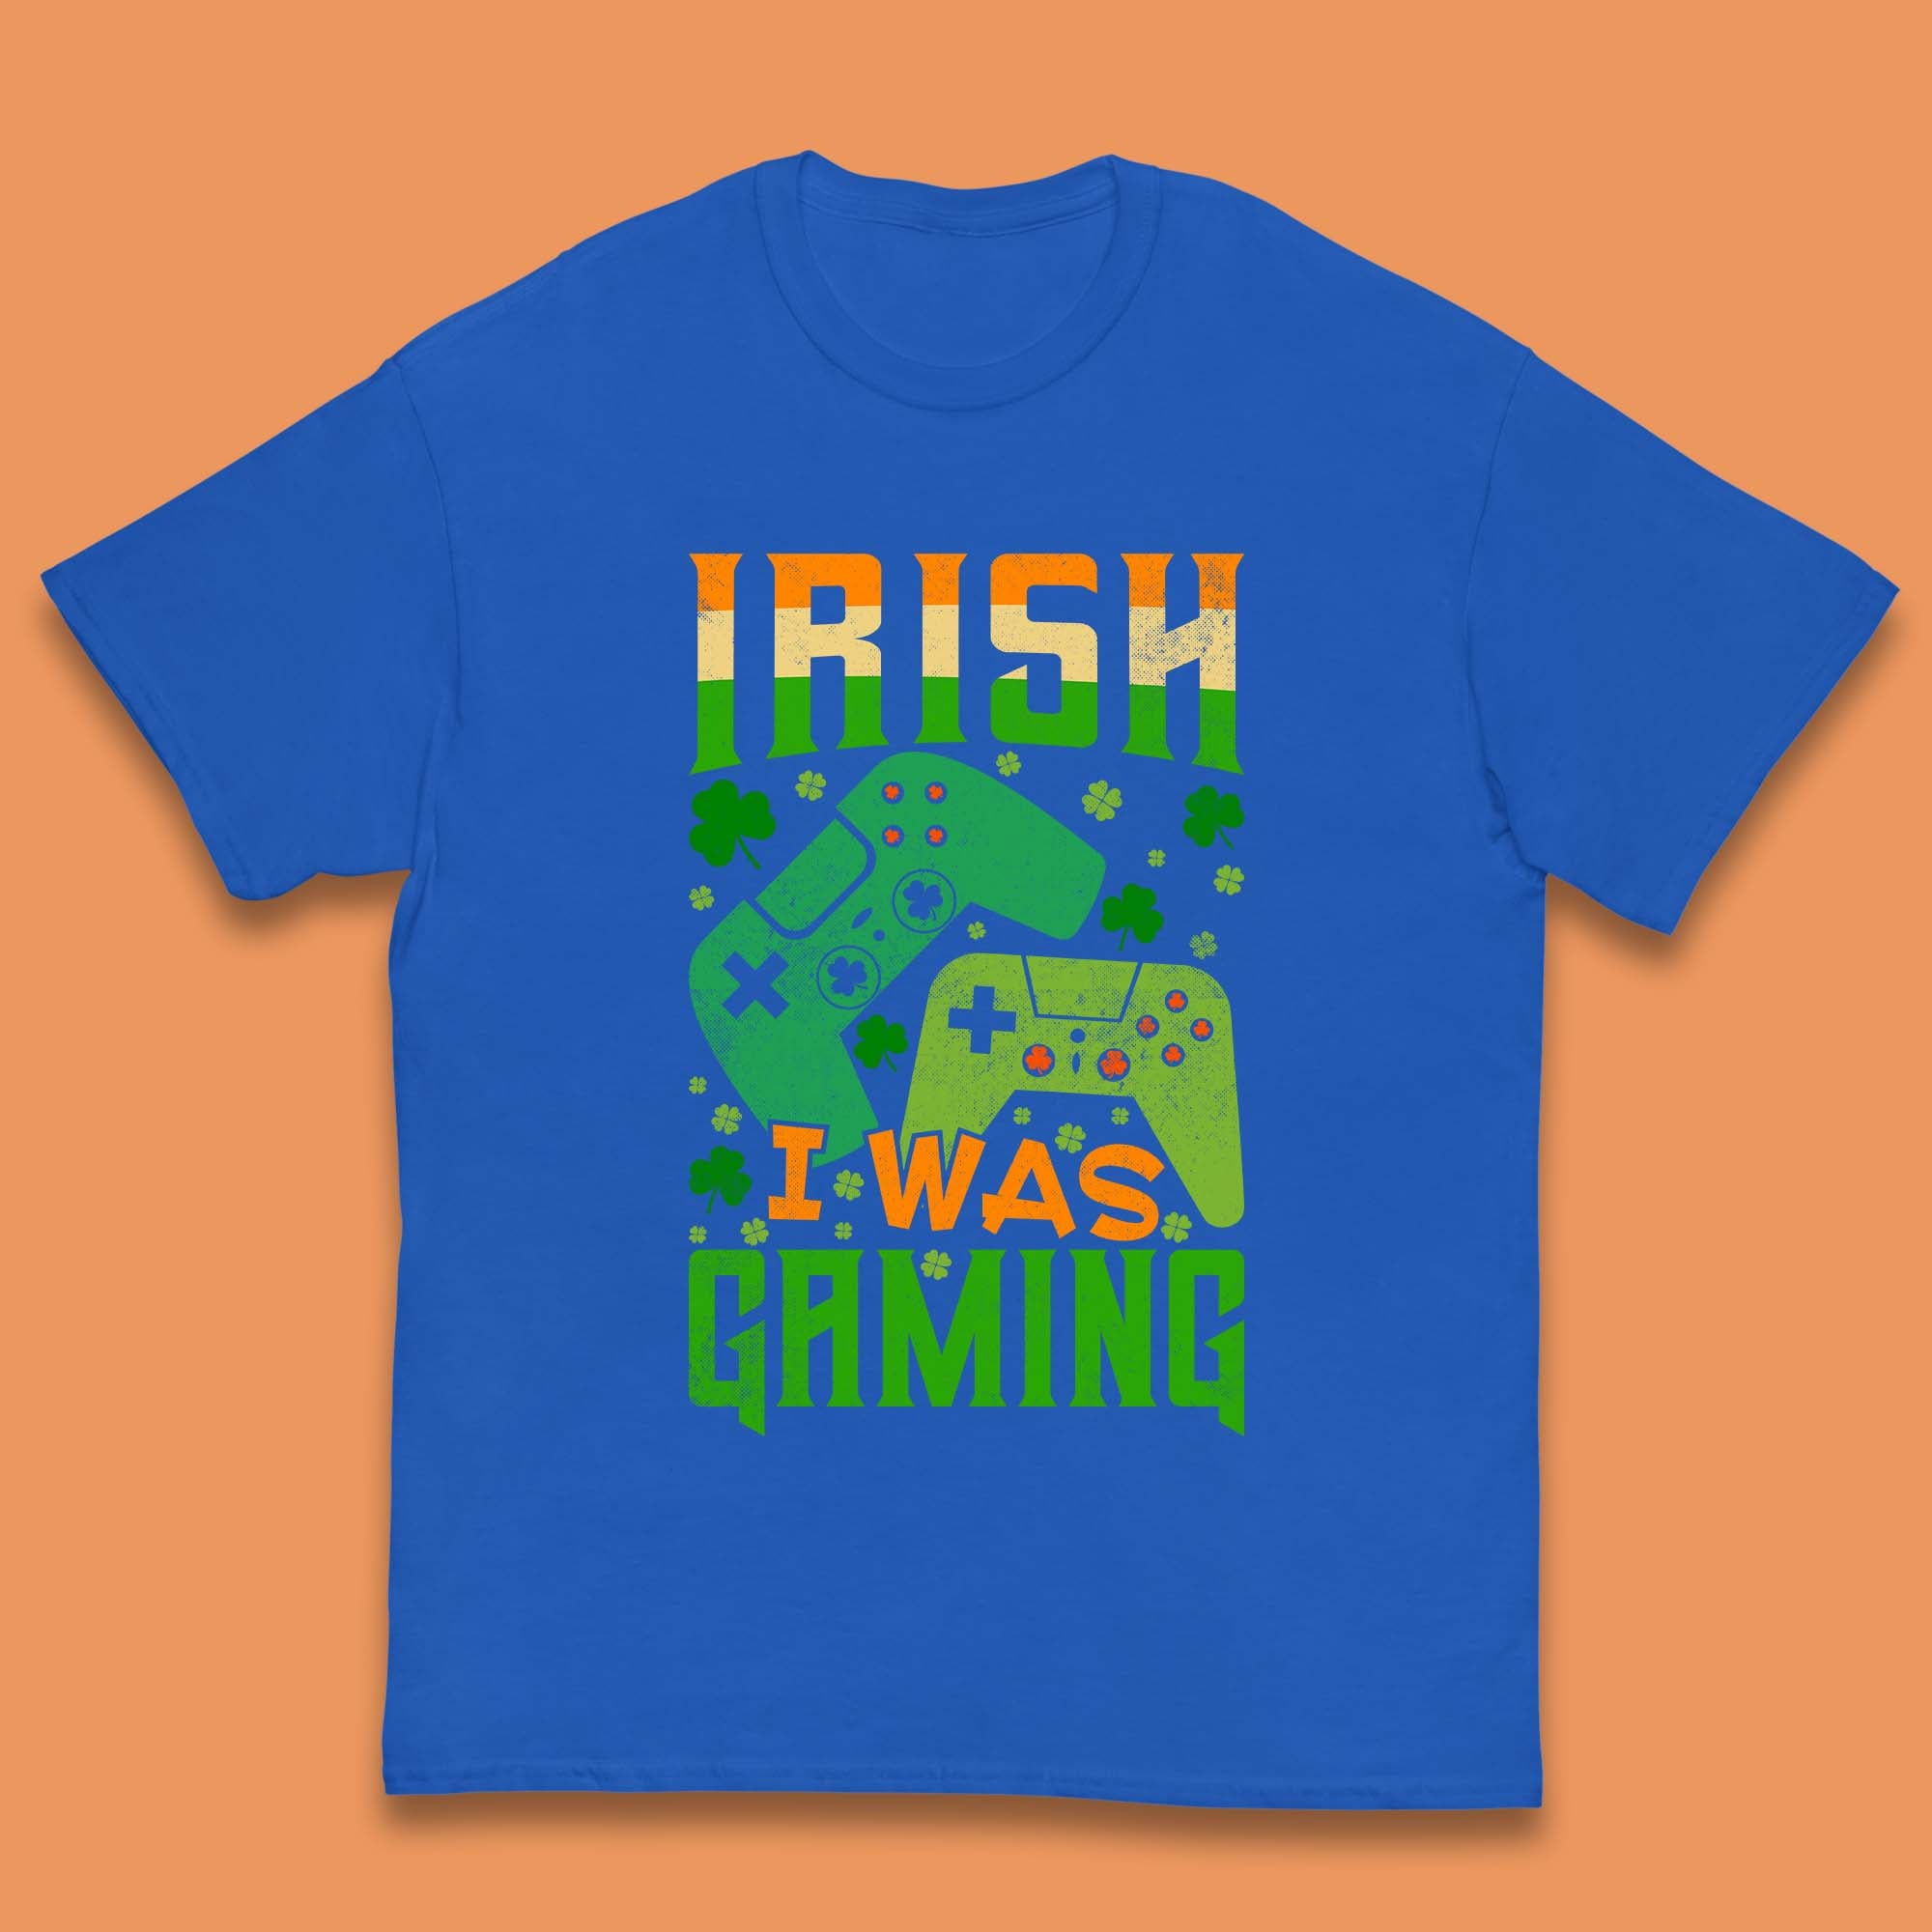 Irish I Was Gaming Kids T-Shirt